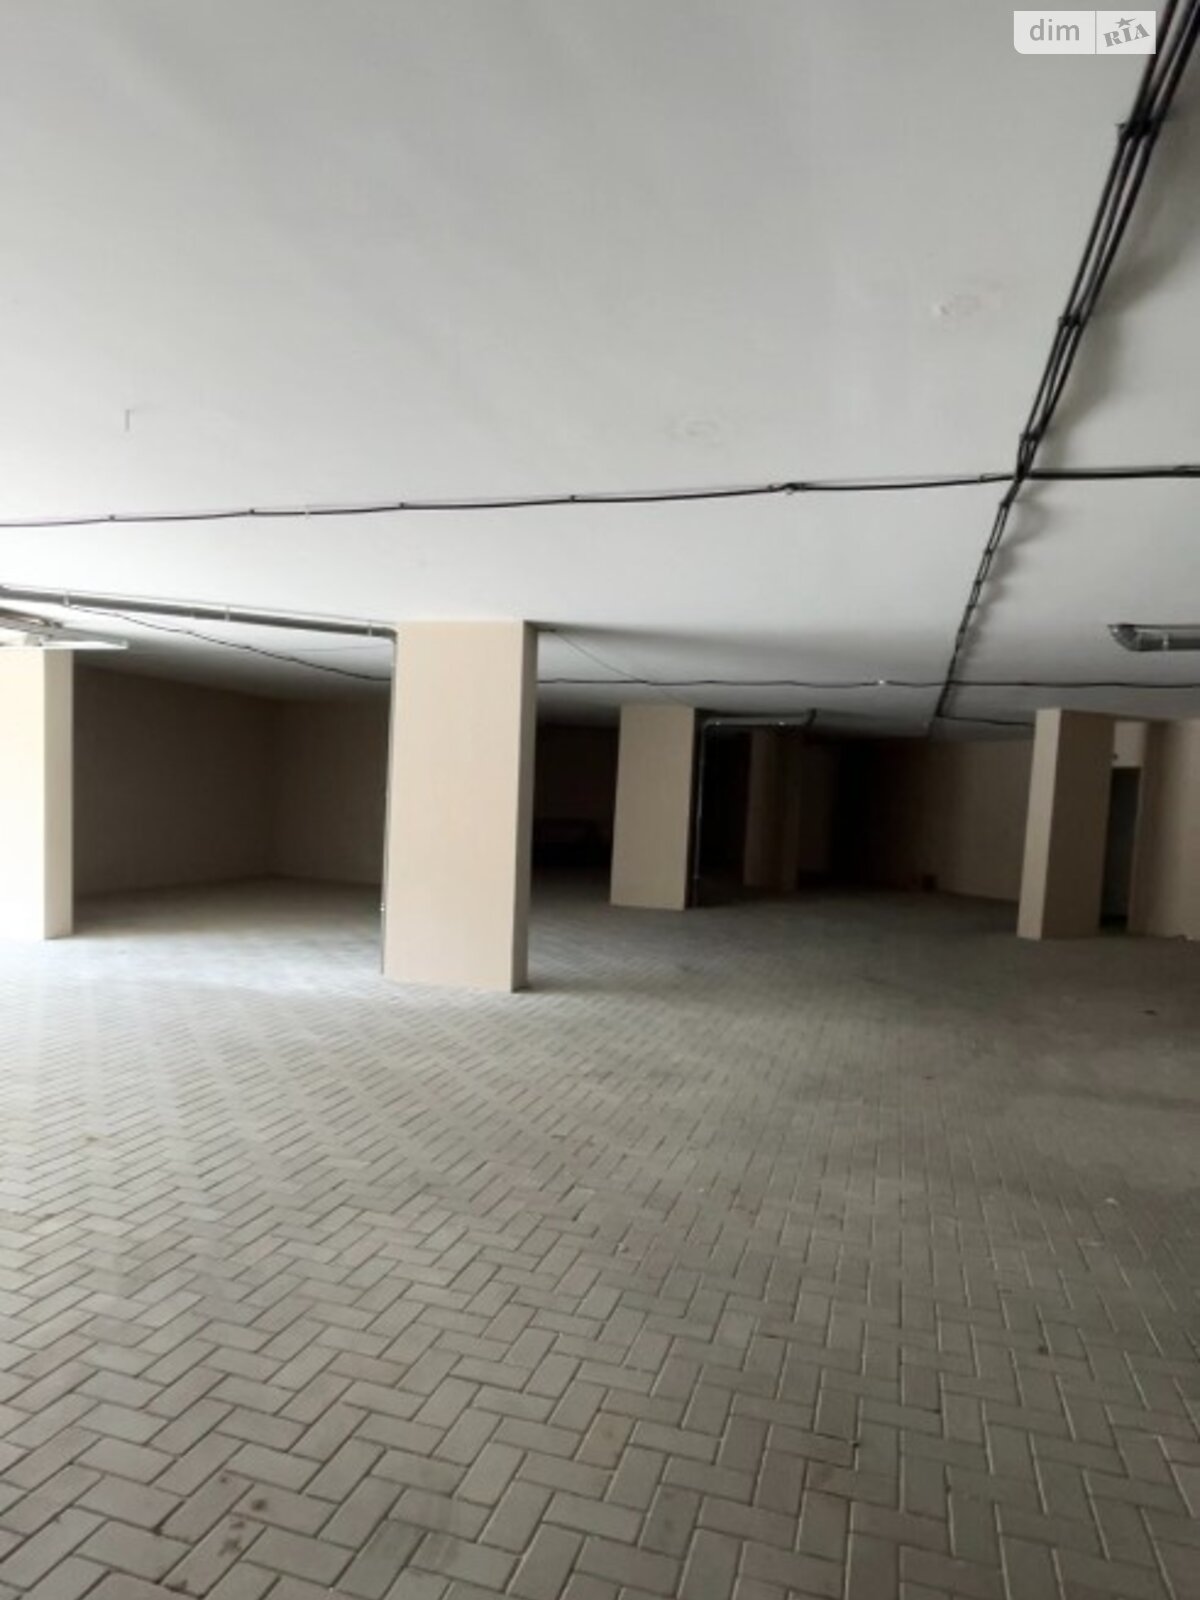 Место в подземном паркинге под легковое авто в Одессе, площадь 15.68 кв.м. фото 1